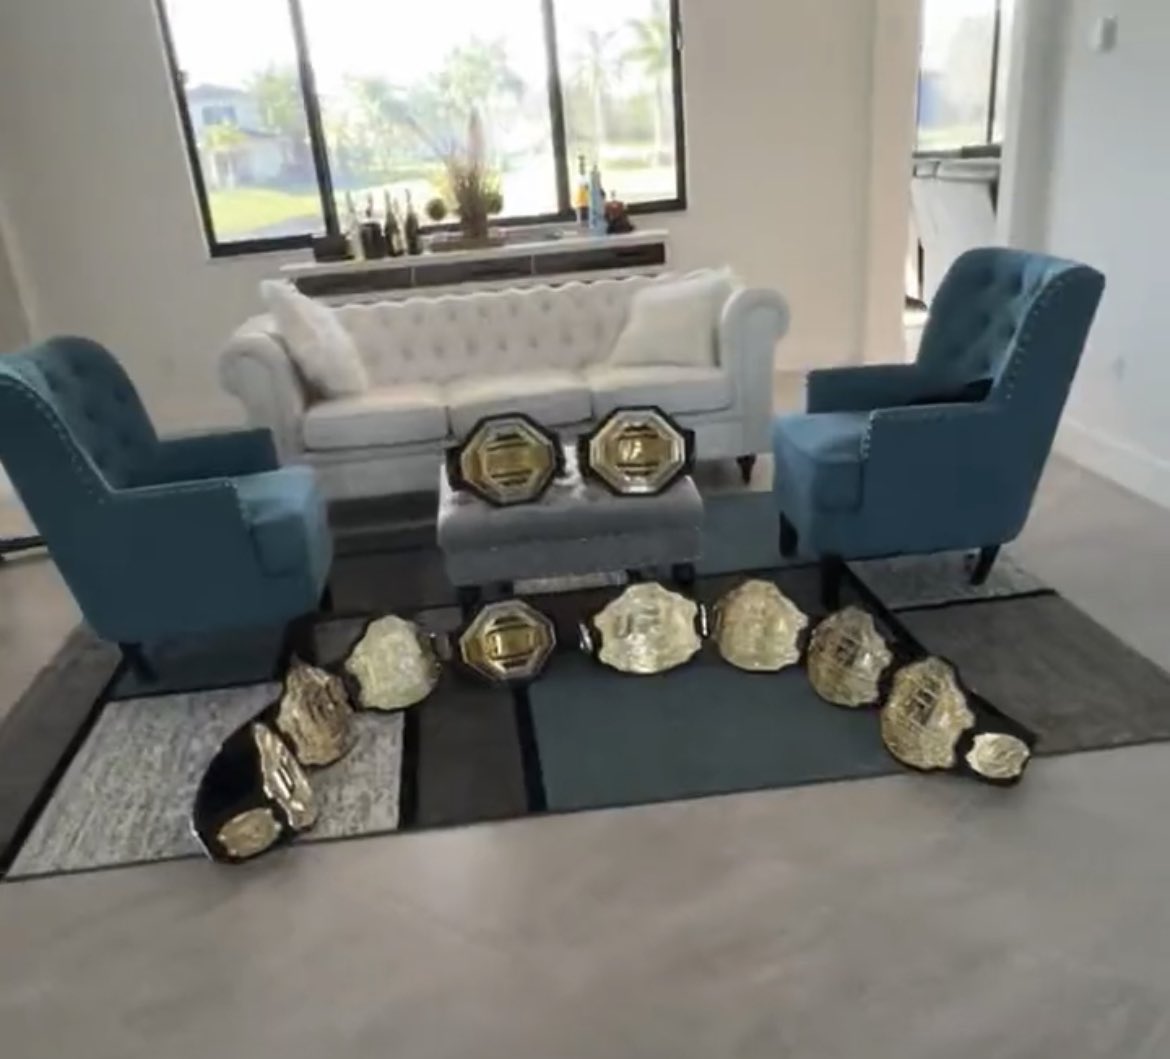 Champ-Champ Amanda Nunes’s collection of UFC belts: https://t.co/5eXx3J4DwJ